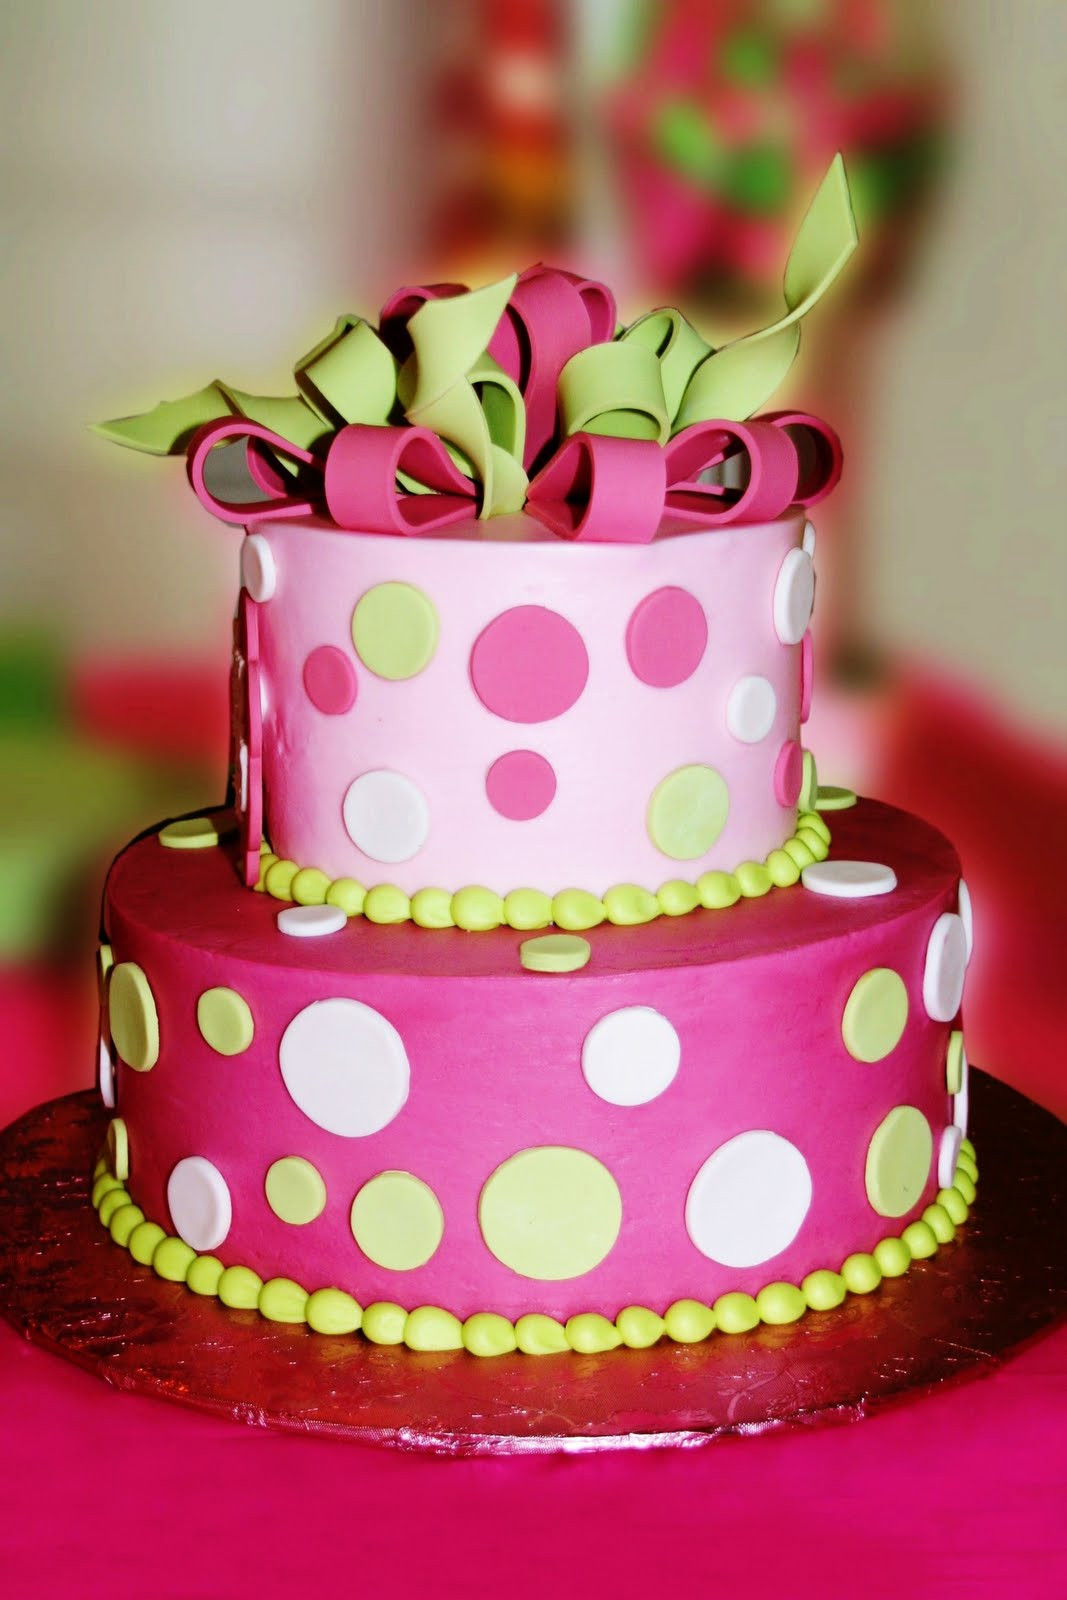 Polka Dot Birthday Cake
 Pinterested Polka Dot Birthday Cake